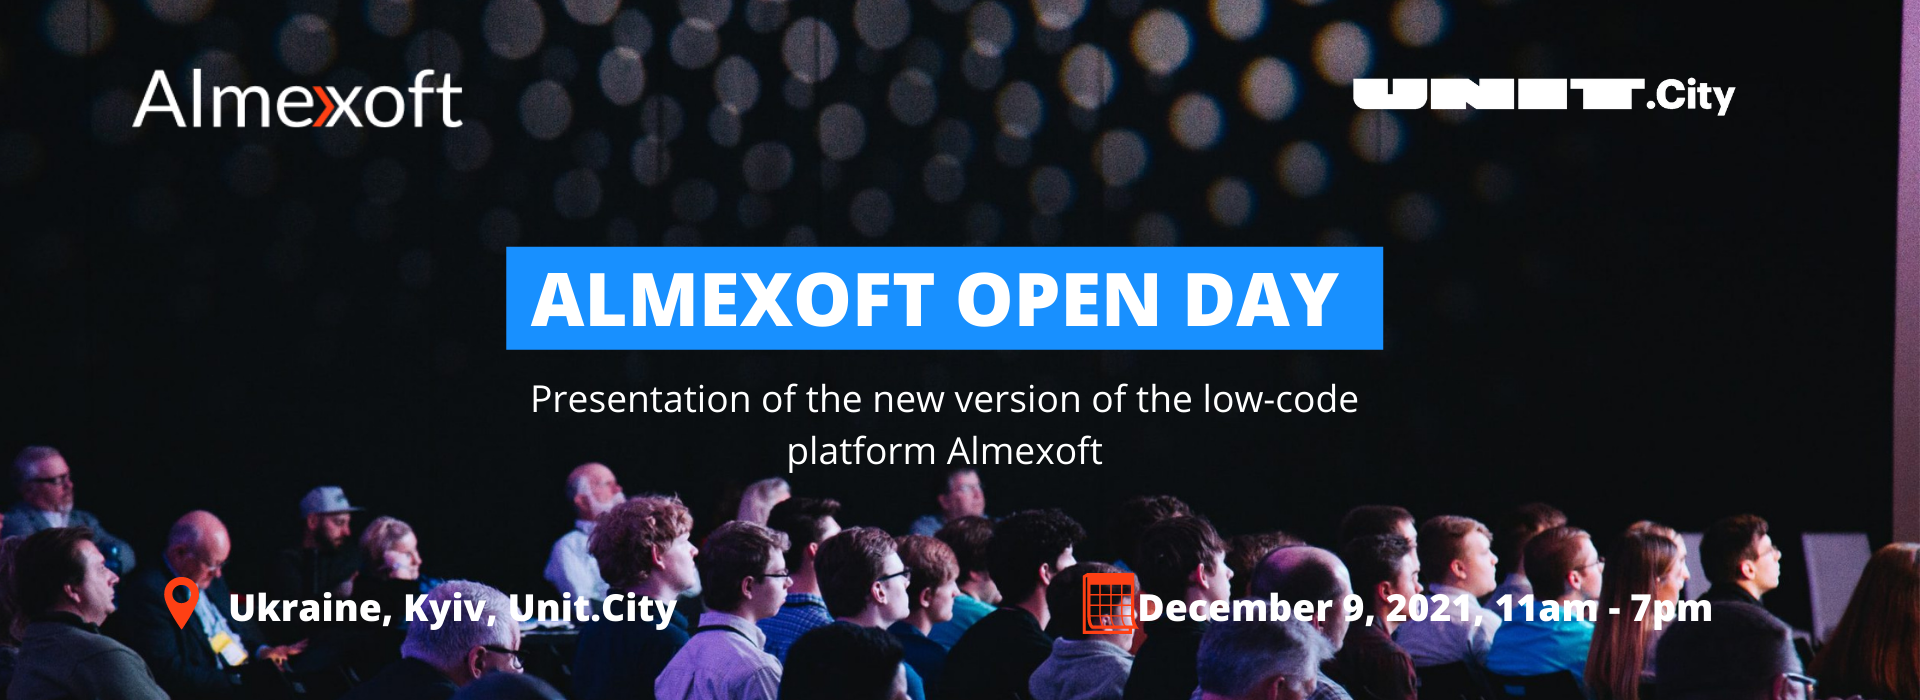 Almexoft Open Day